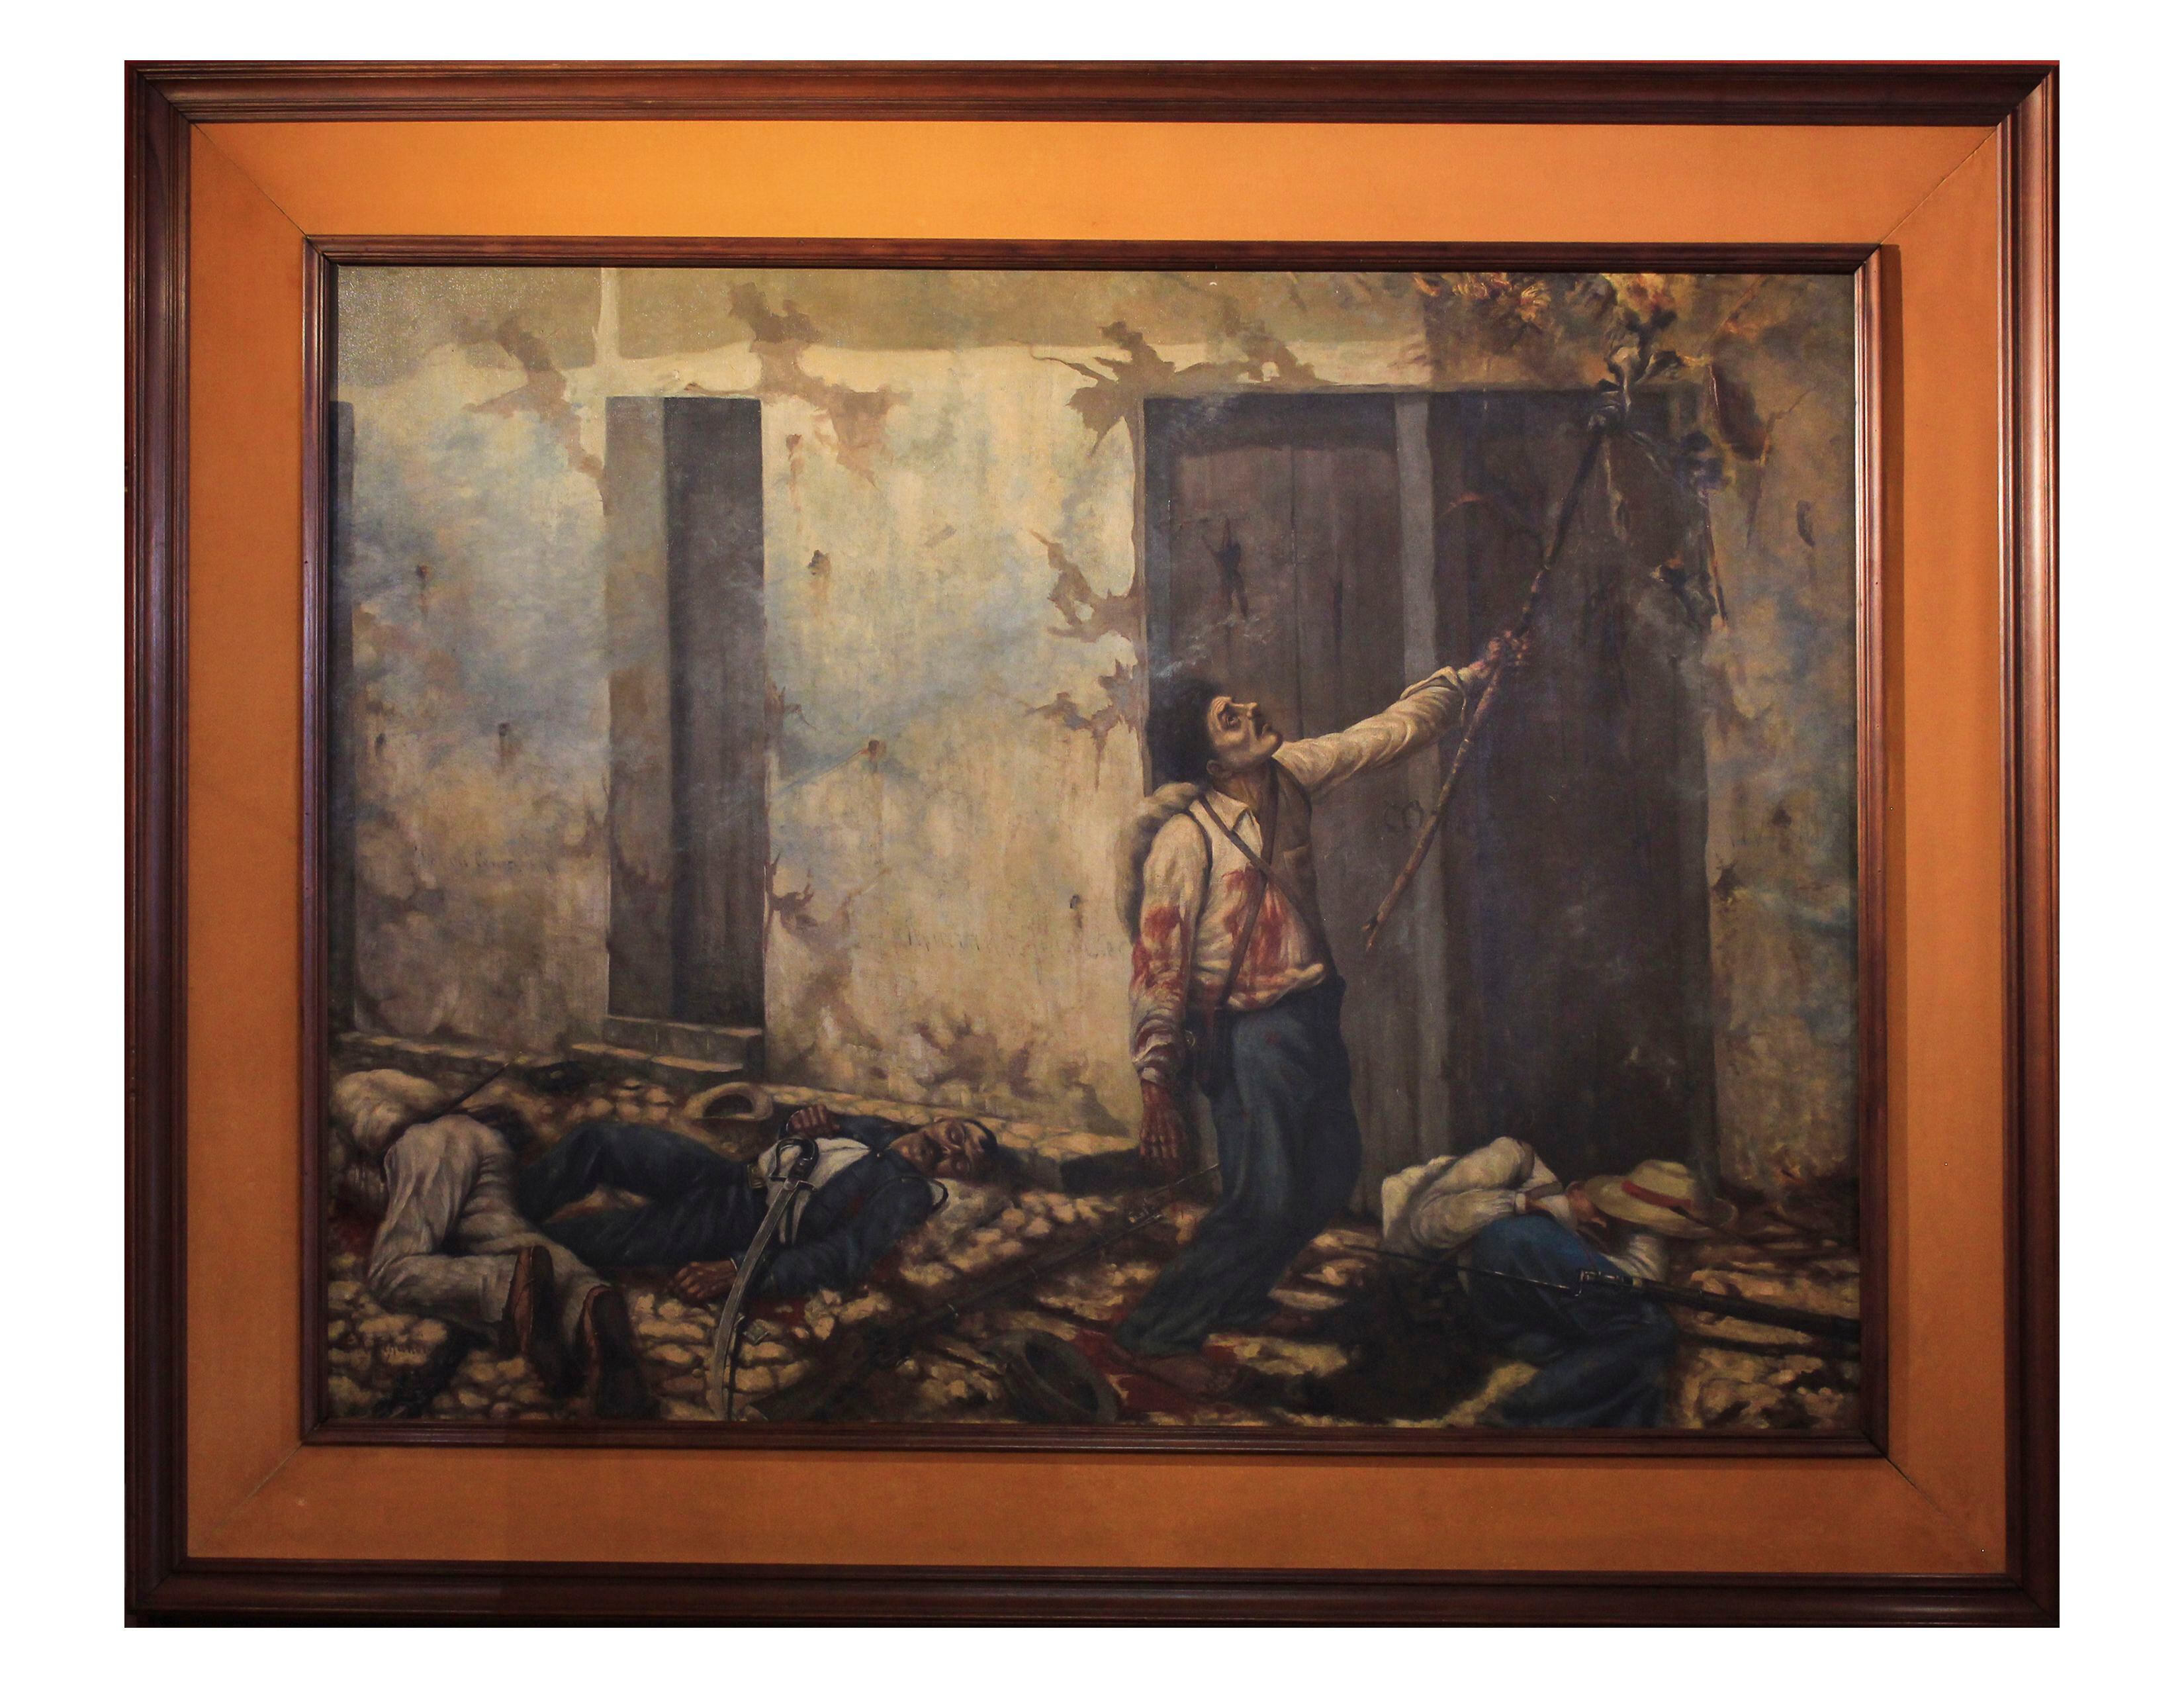 El cuadro 'La quema del Mesón' realizada por Enrique Echandi en 1896, fue duramente criticado en su época por mostrar la hazaña del héroe nacional de una forma más visceral y realista. Actualmente, la pintura se encuentra en el museo Histórico Cultural Juan Santamaría, en Alajuela. Foto: Massiel Varela Piñeiros